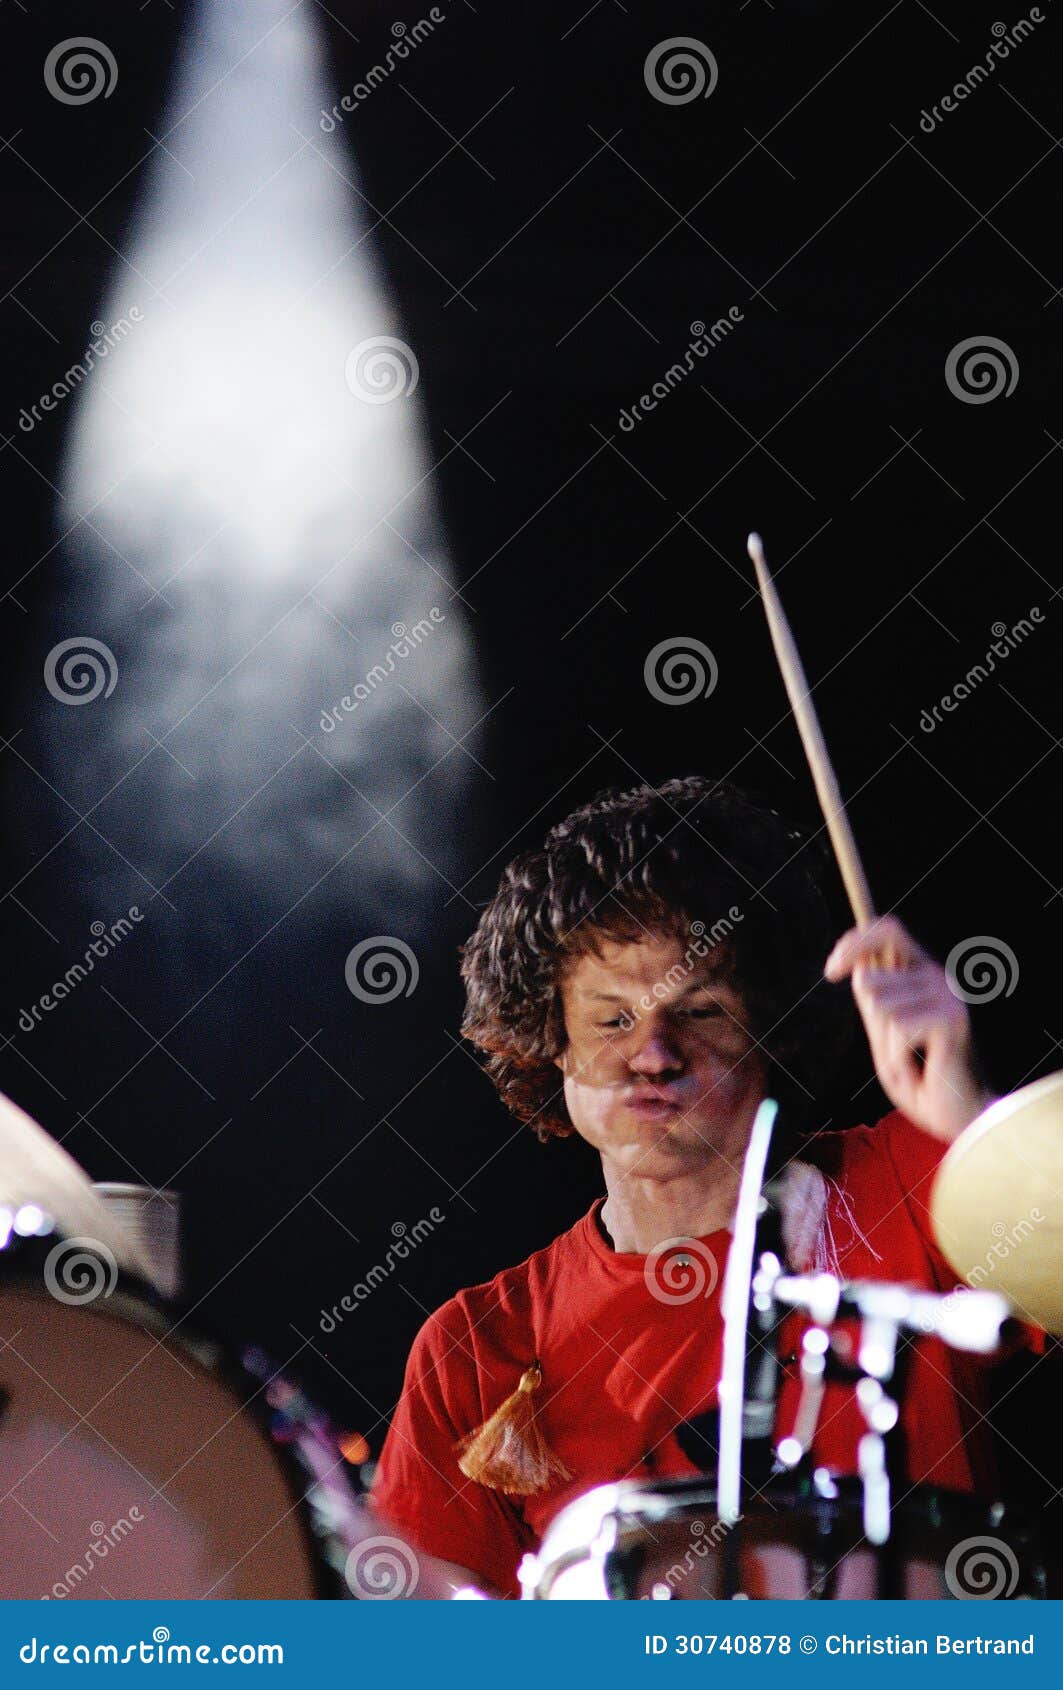 Deerhof Band Performs at Sant Jordi Club Editorial Stock Photo - Image ...